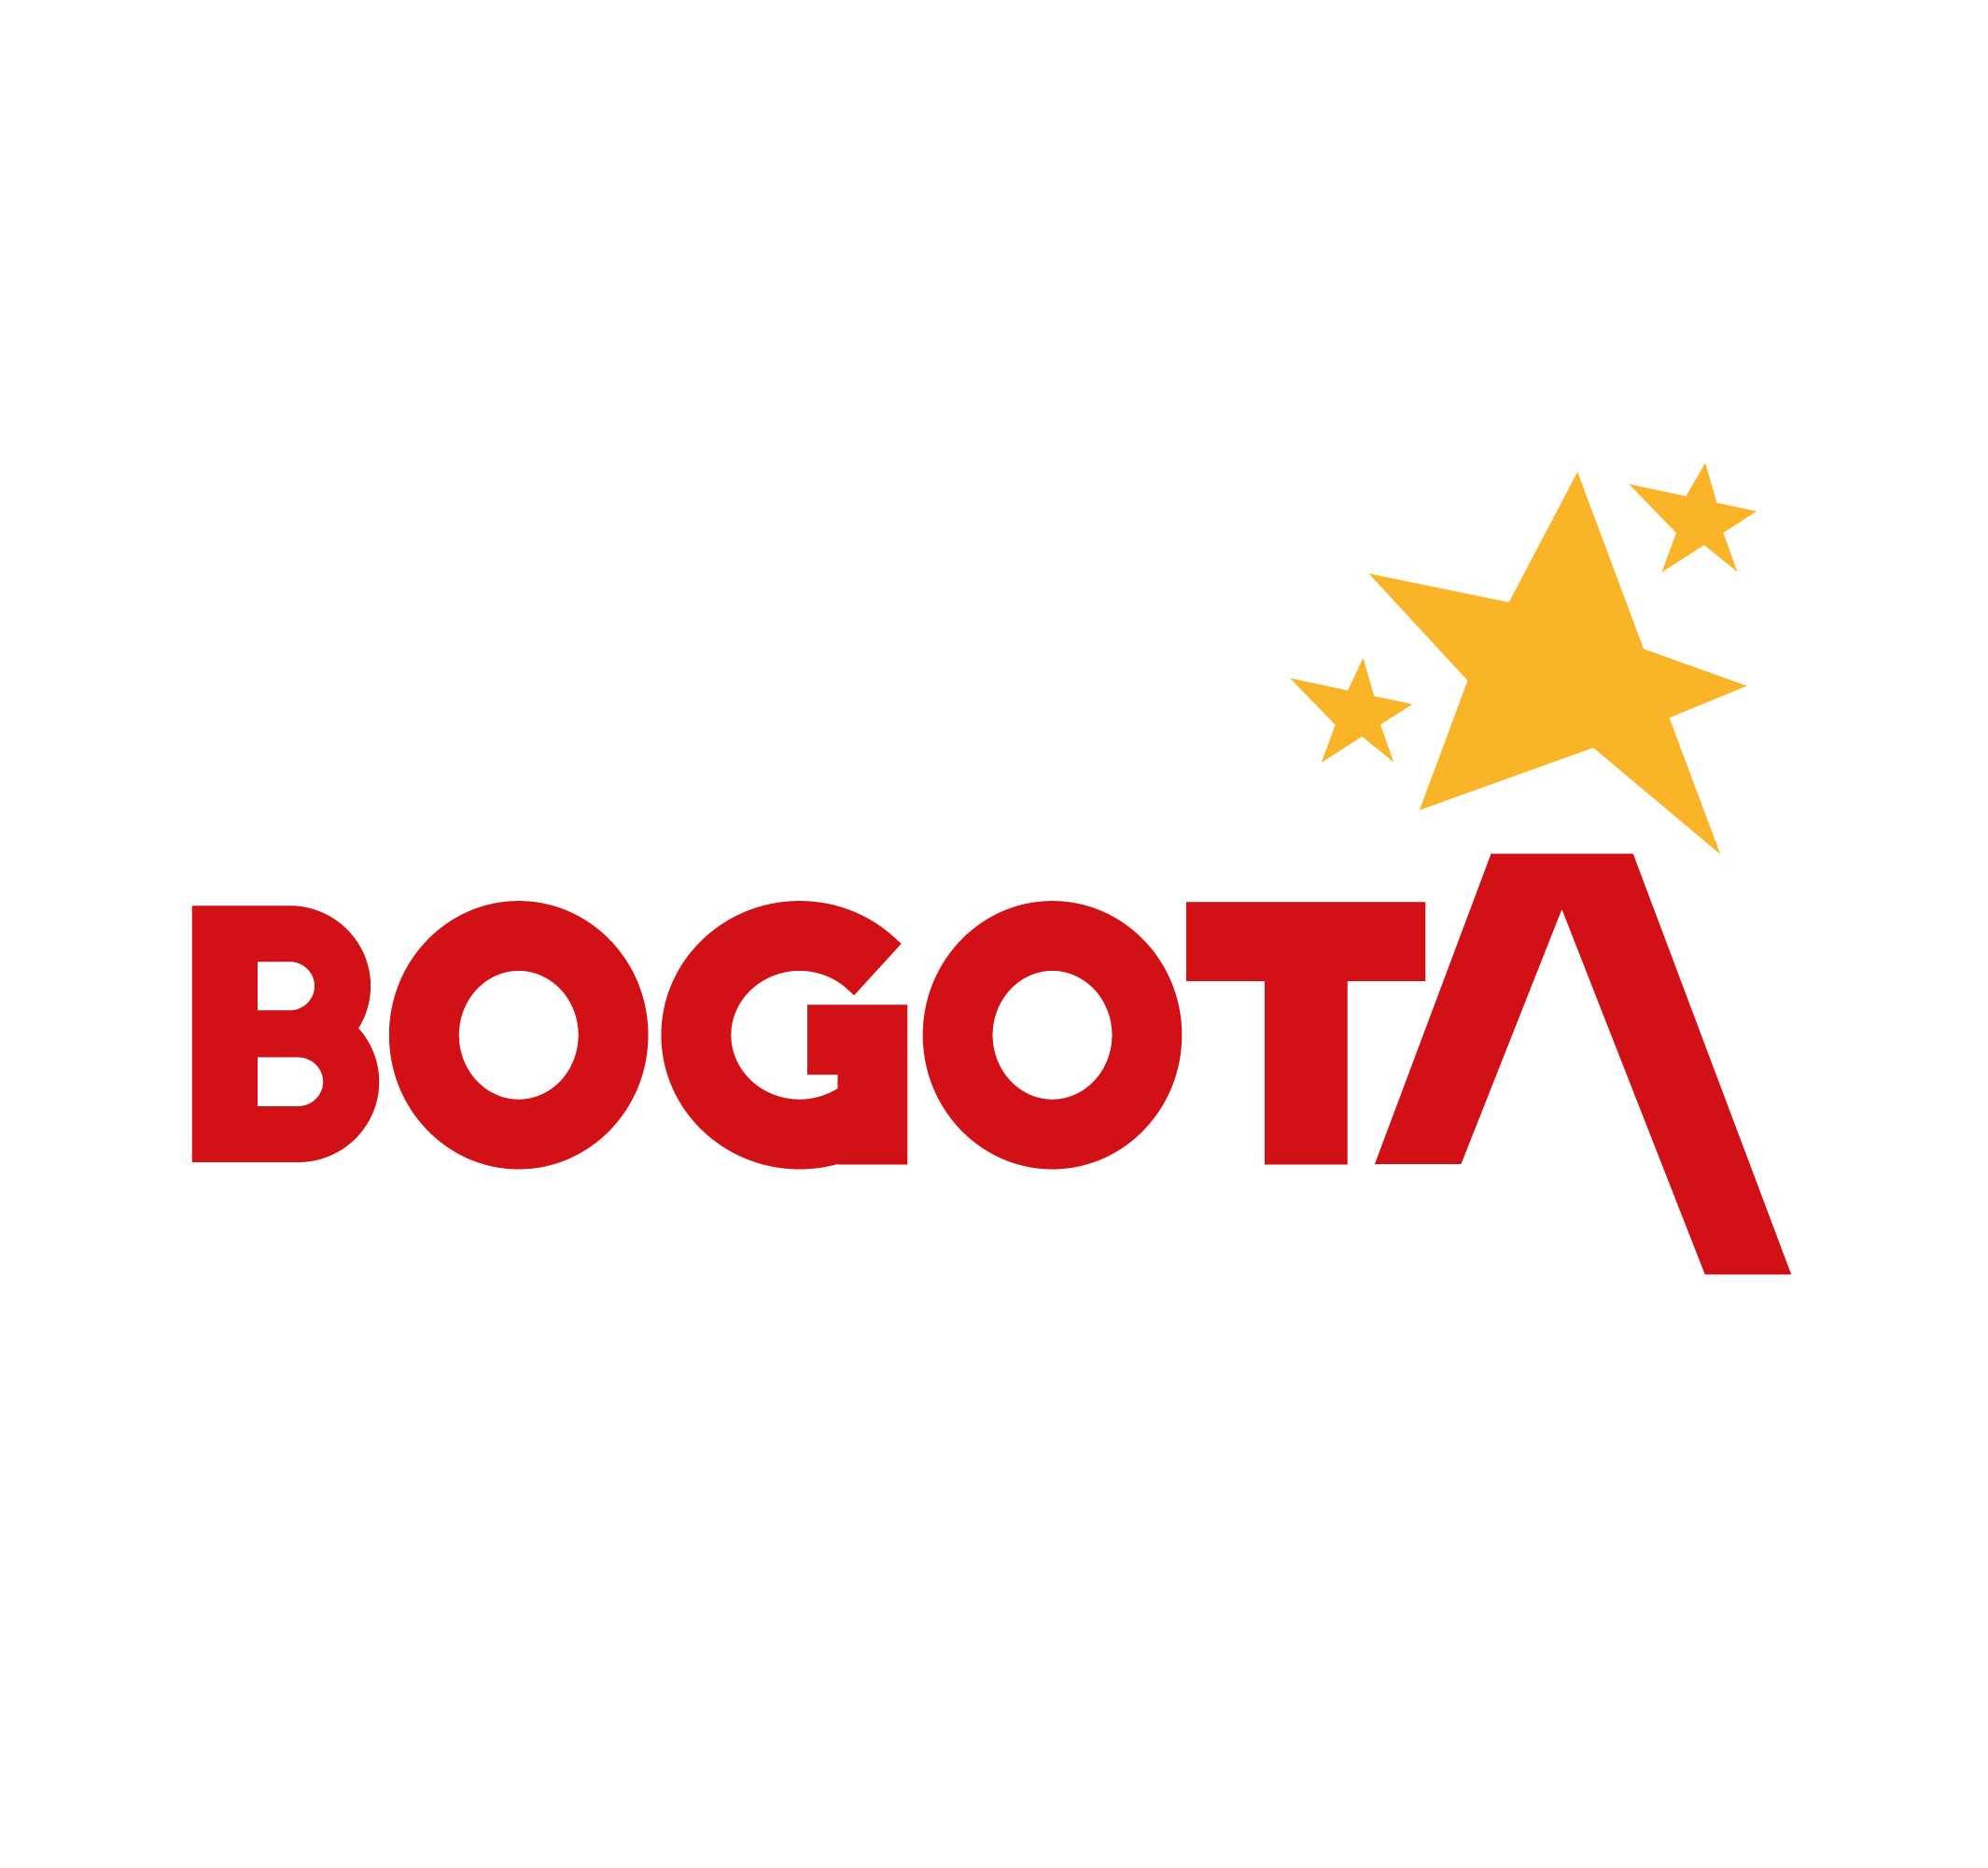 Logo Bogotá